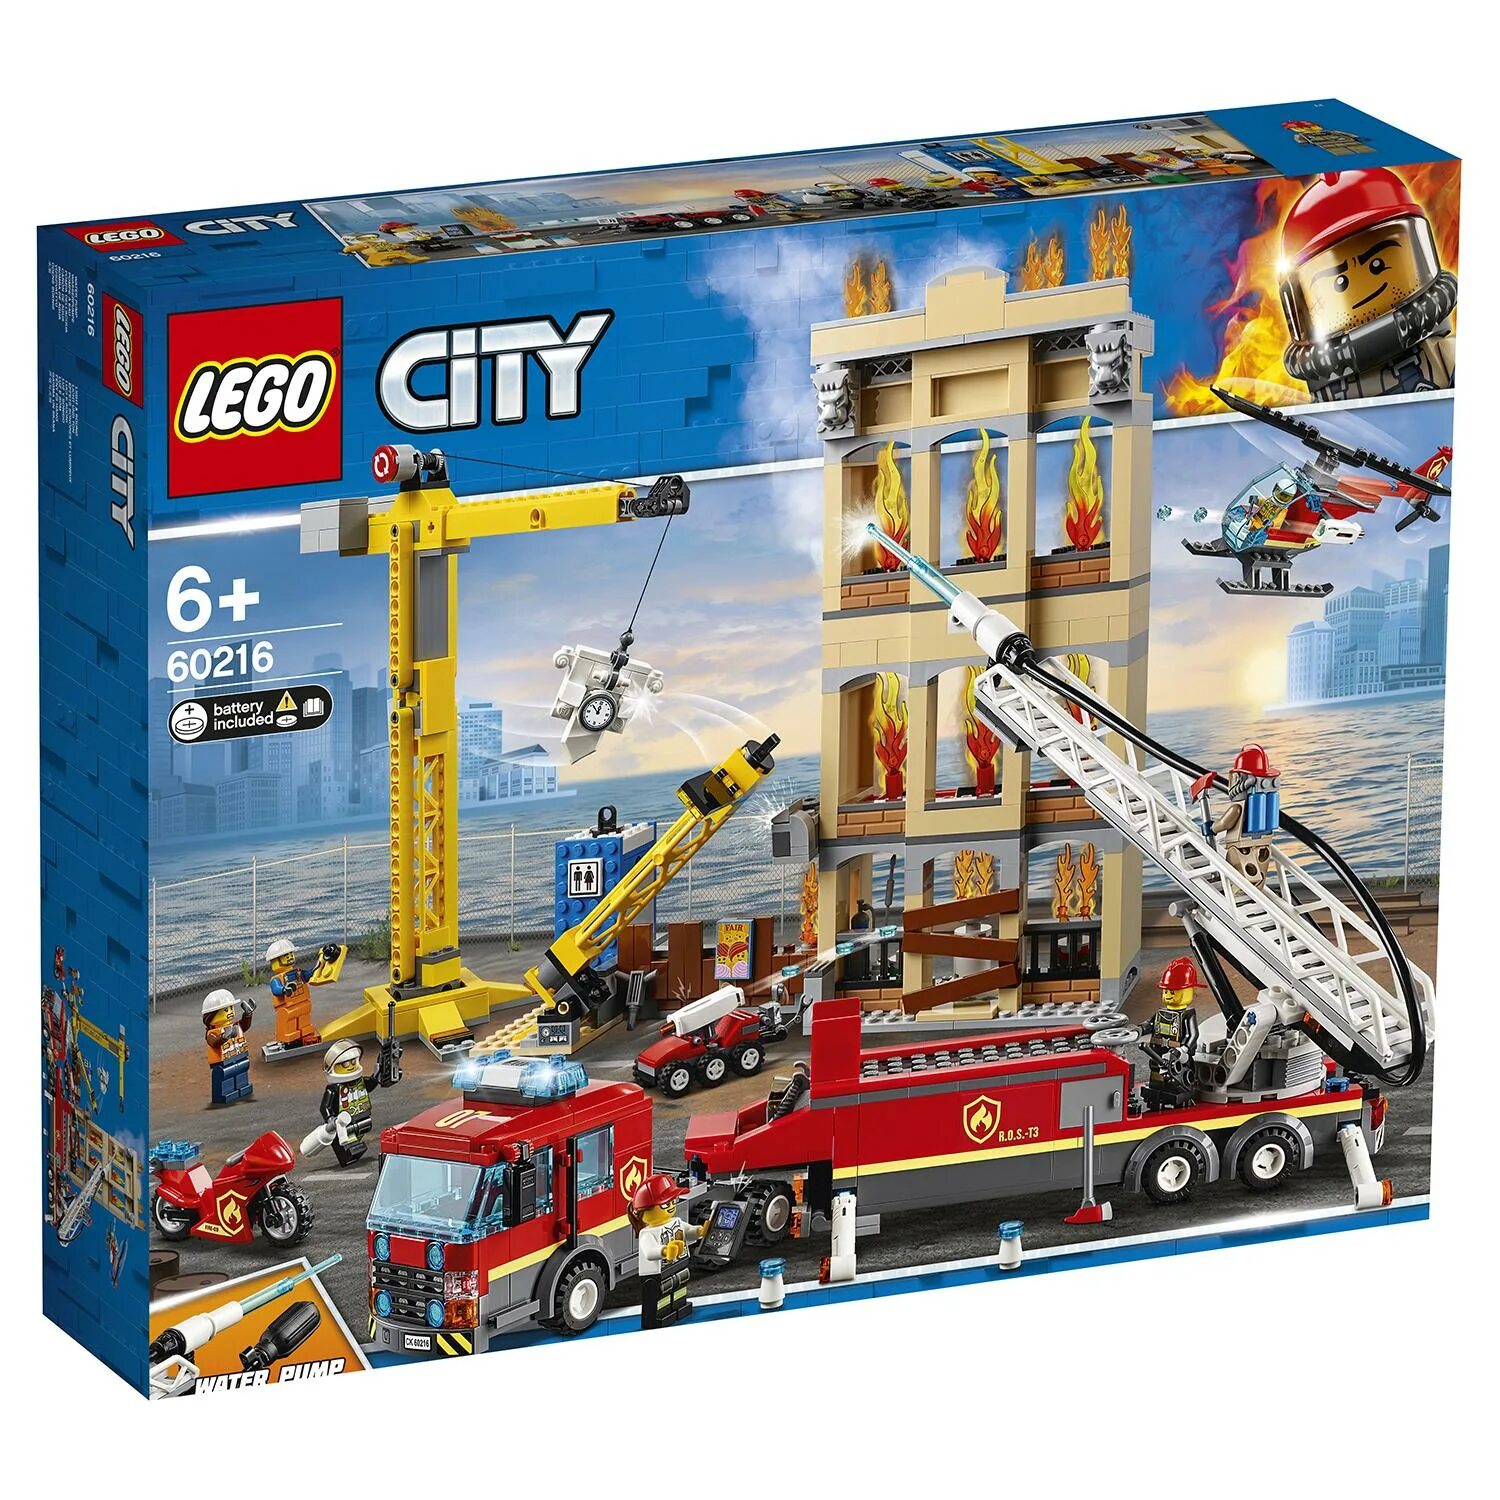 Сити пожарная. Лего Сити 60216. LEGO City 60216. LEGO City Fire 60216. Лего Сити пожарная 60216.